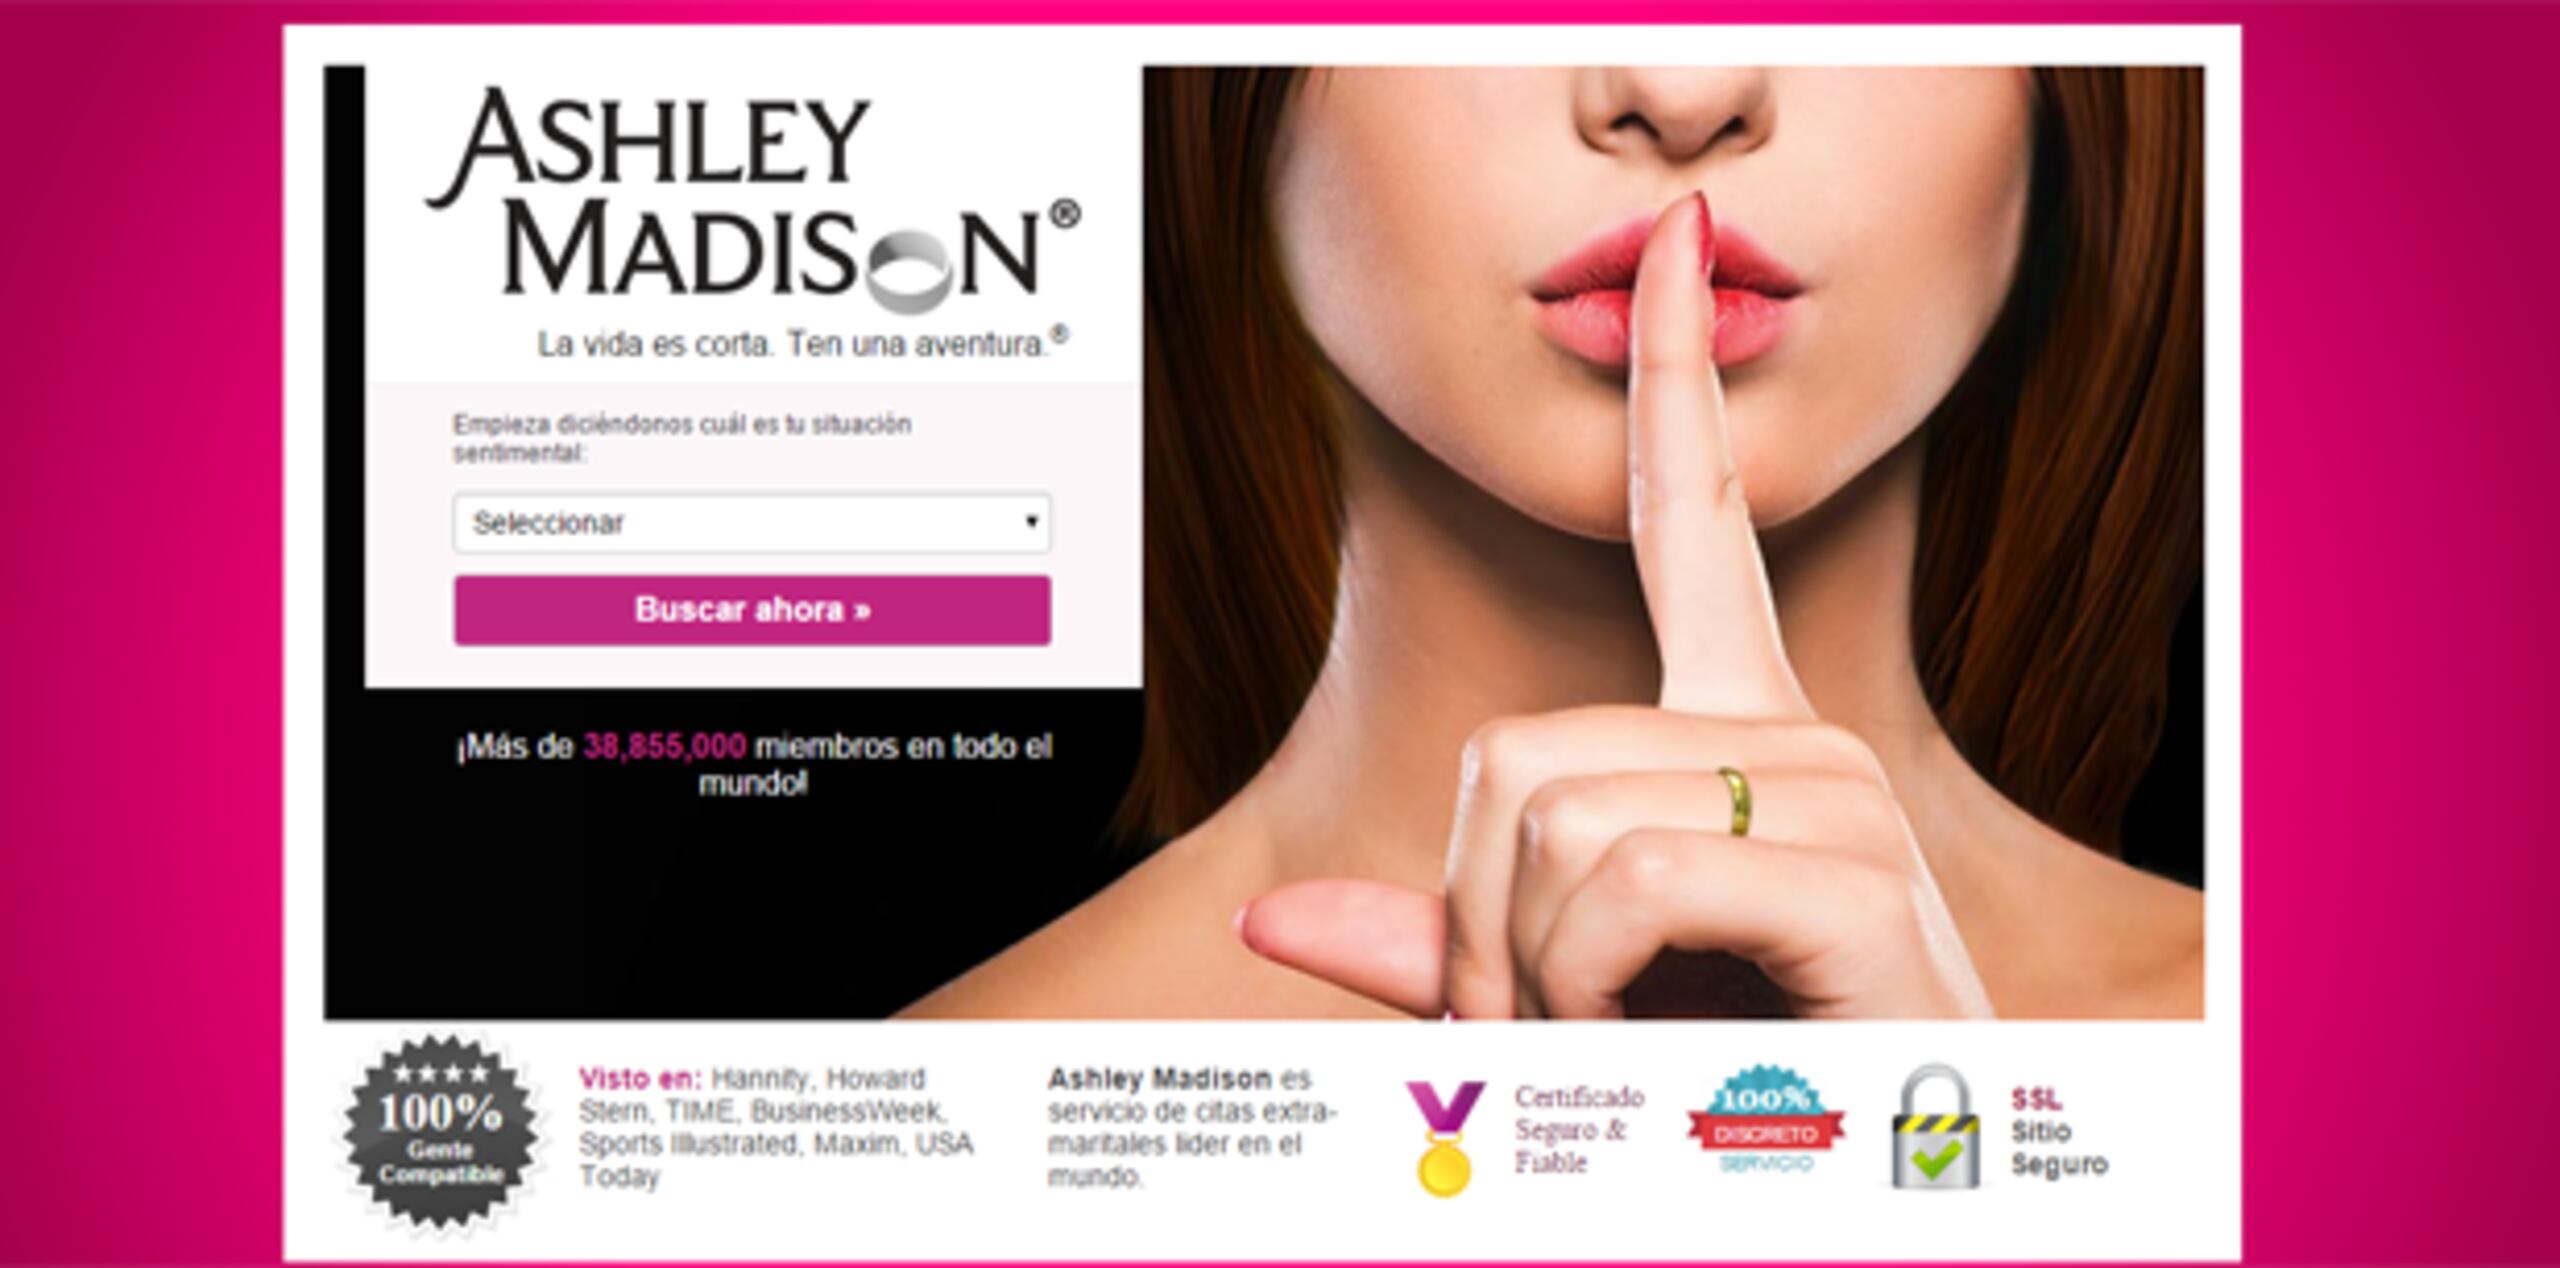 Los motivos de los piratas informáticos no estuvieron claros de inmediato, aunque han acusado a Ashley Madison de falsear perfiles de mujeres para mantener el interés entre los usuarios varones.